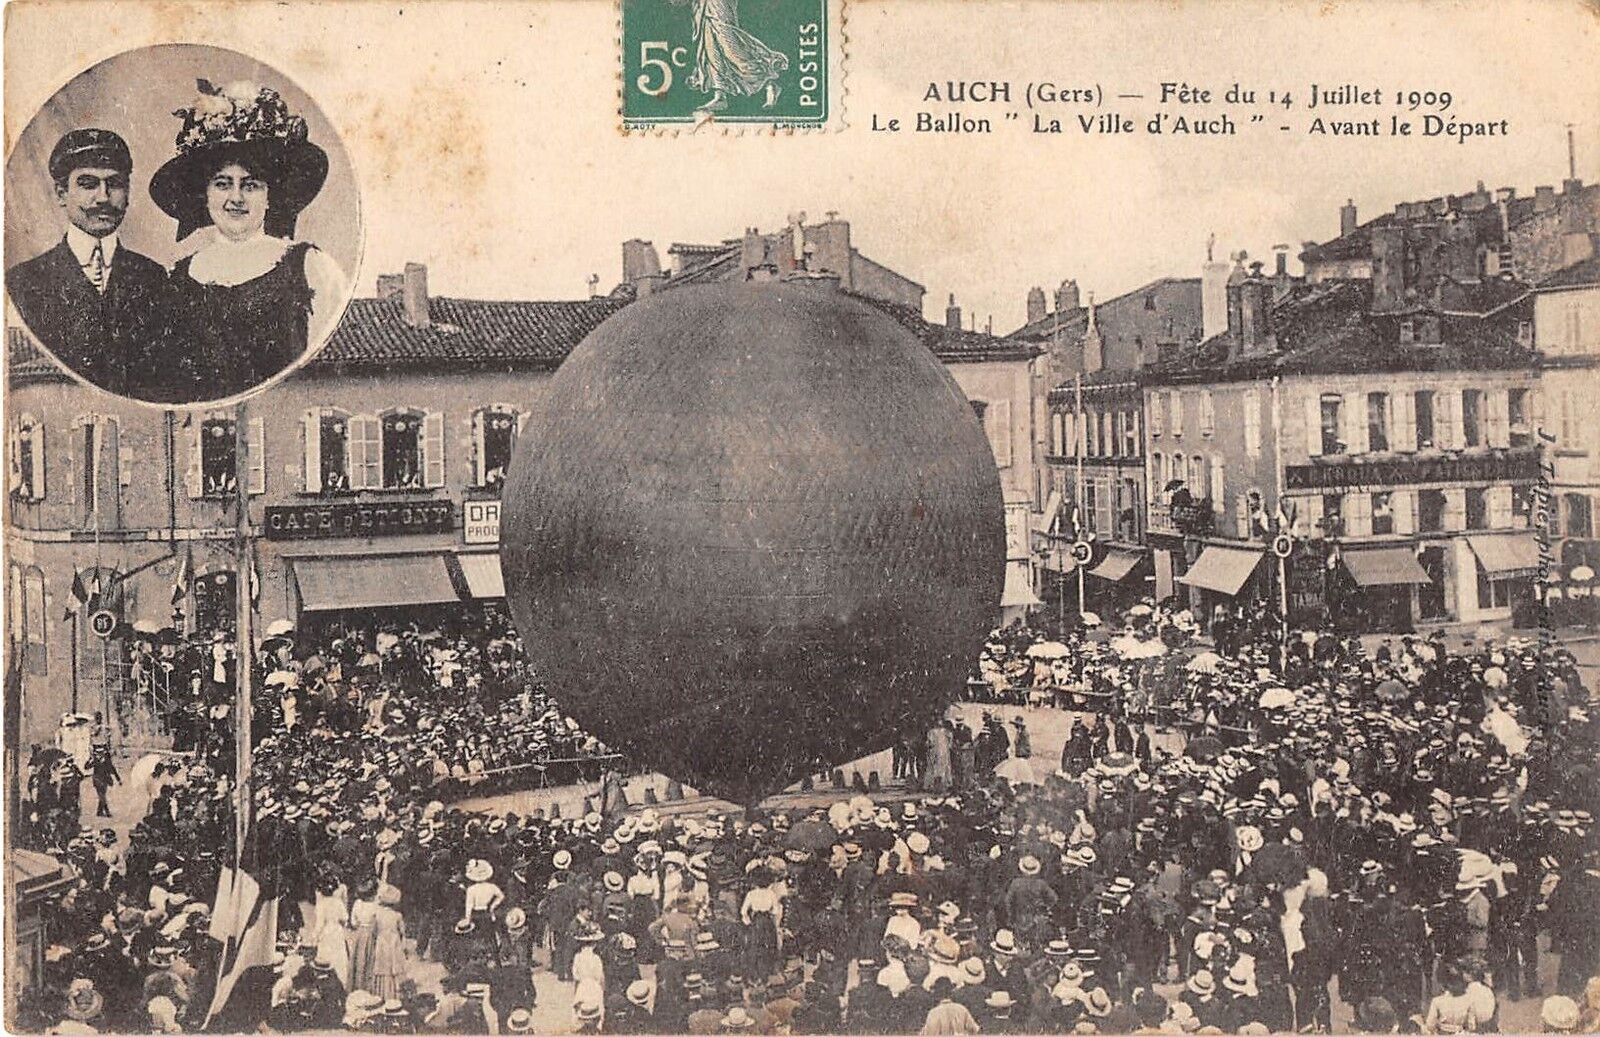 CPA 32 AUCH FETE DU 14 JULY 1909 LE BALLON VILLE D'AUCH LACHEZ TOUT (rare top